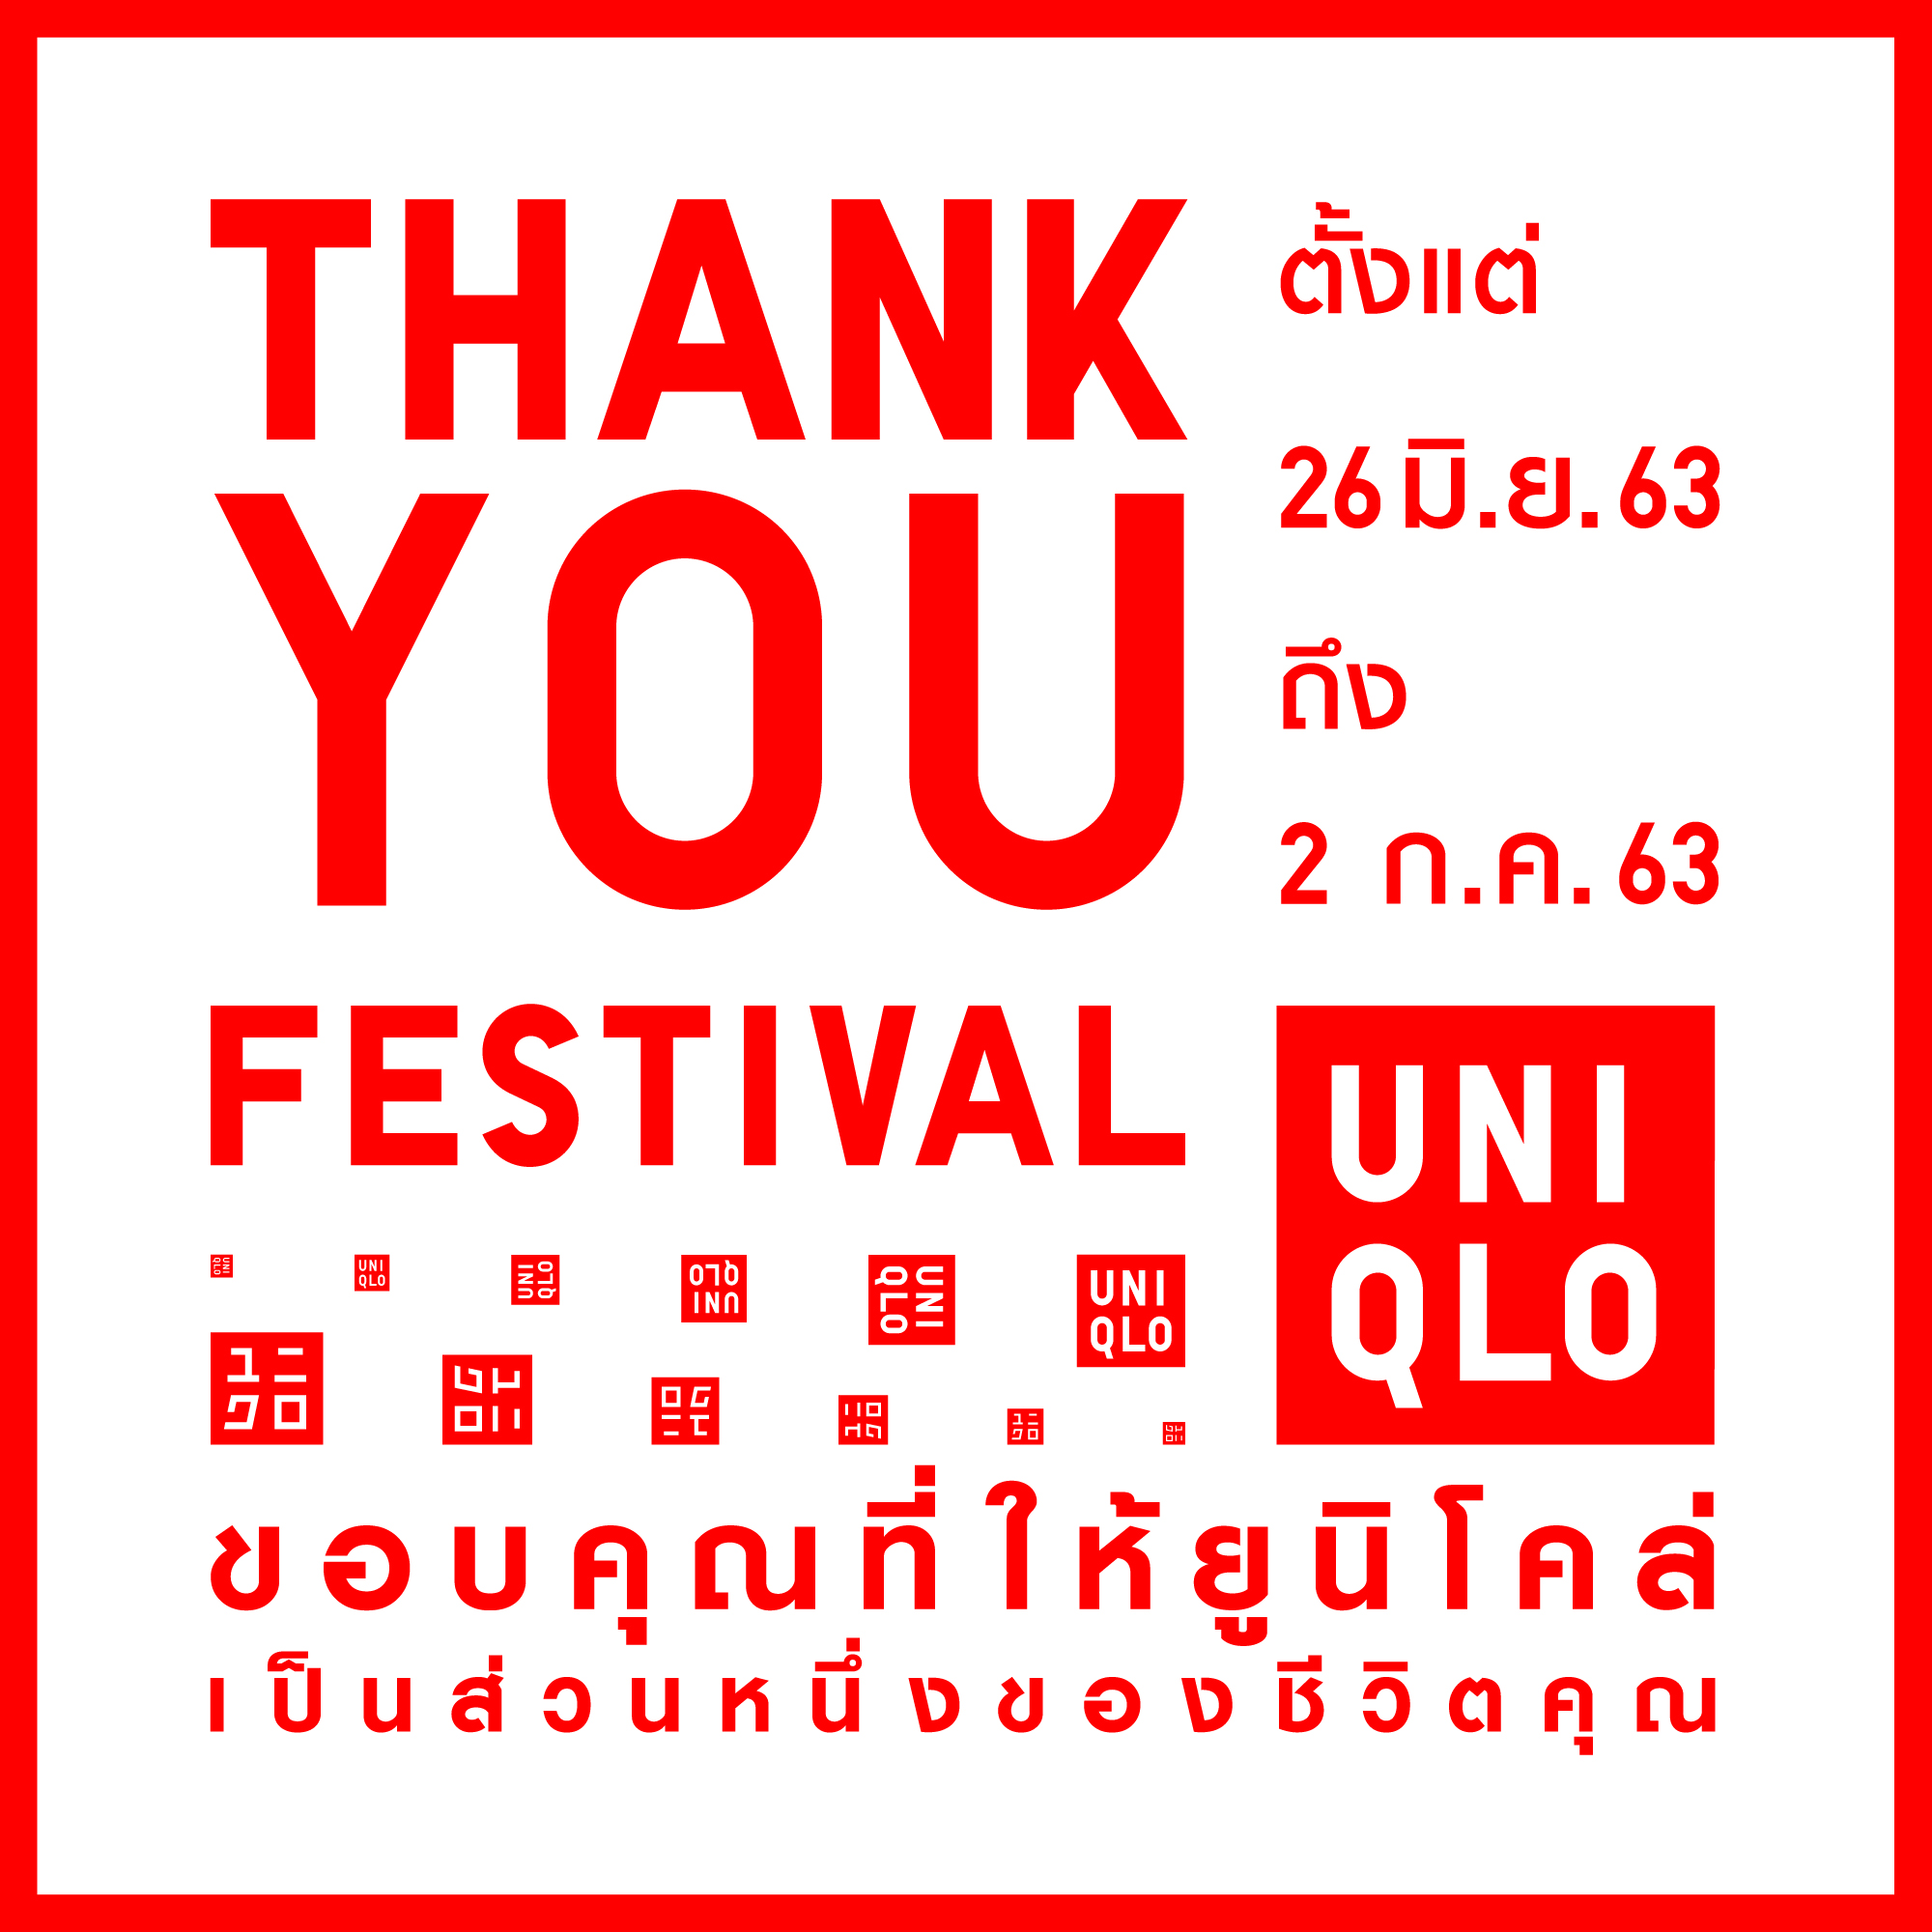 ยูนิโคล่ส่งกิจกรรม Thank You Festival แทนคำขอบคุณแด่ลูกค้าที่ให้ยูนิโคล่ได้เป็นส่วนหนึ่งของชีวิต